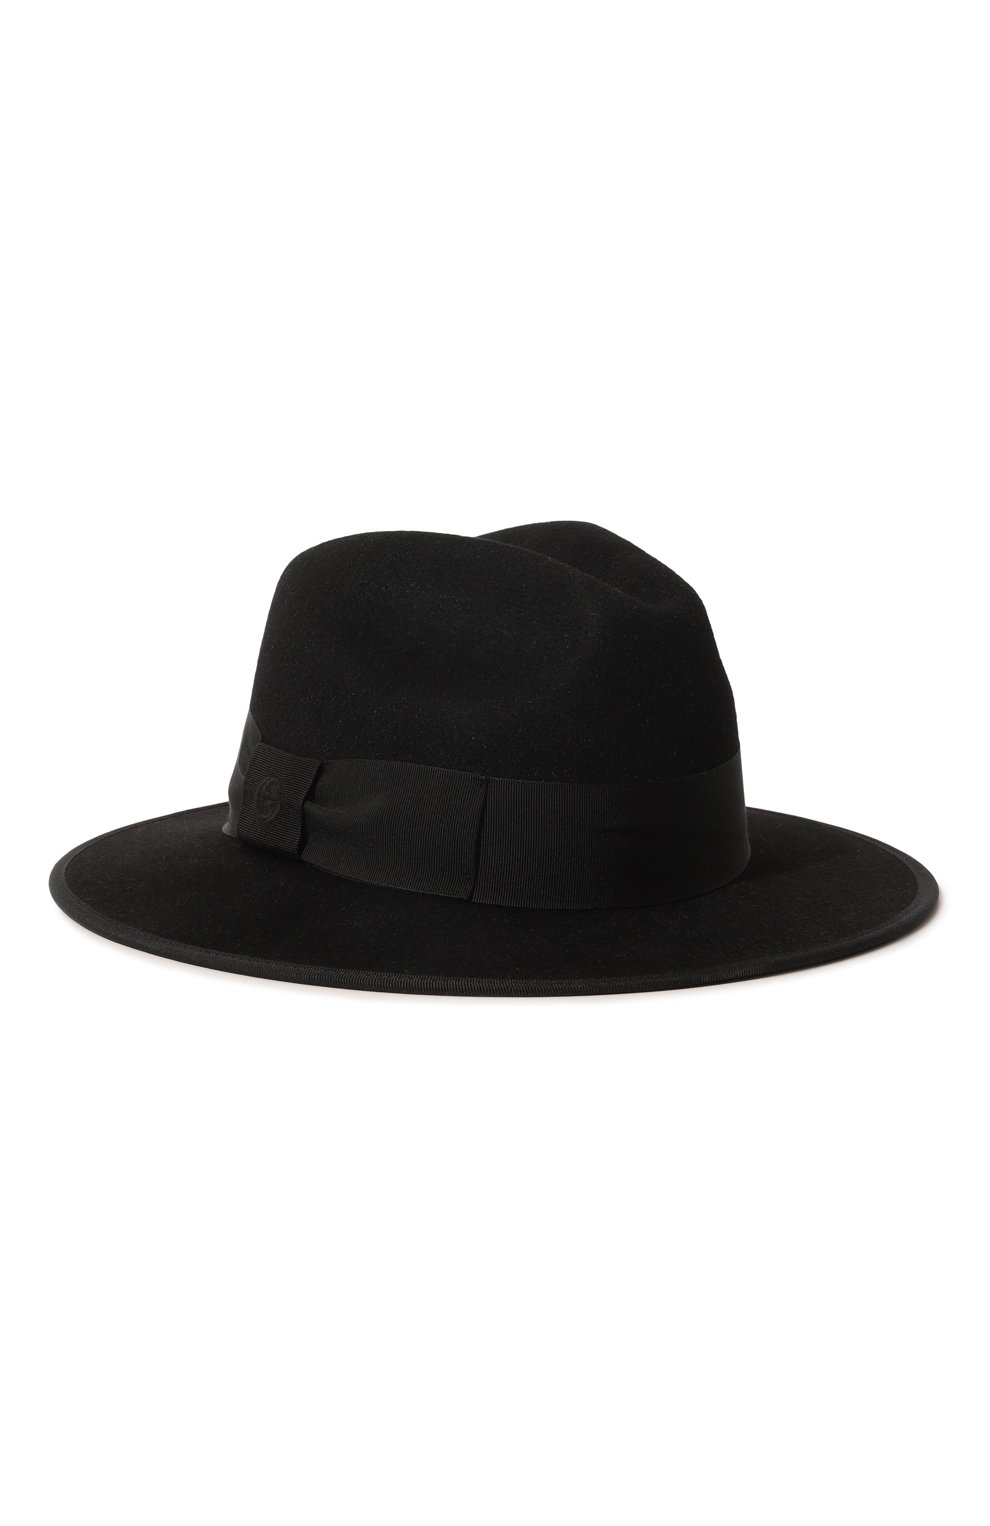 Шляпы Gucci, Фетровая шляпа Gucci, Италия, Чёрный, Фетр: 100%;, 13197801  - купить